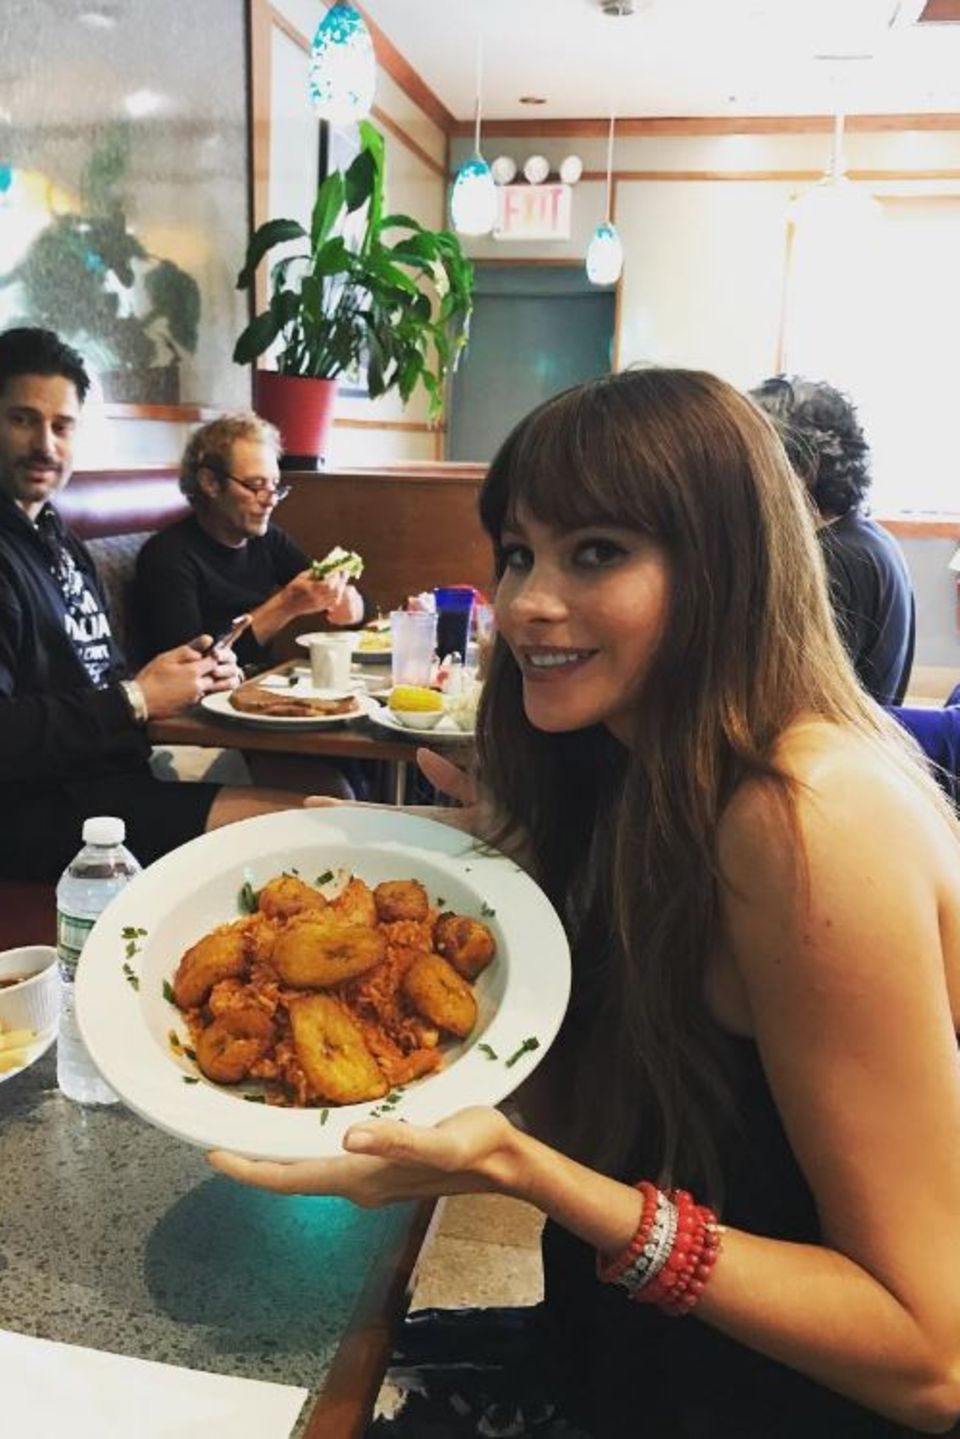 Bei "Modern Family"-Star Sofia Vergara gibt es lecker Frittiertes. Ehemann Joe Manganiello (l.) scheint etwas neidisch zu sein.